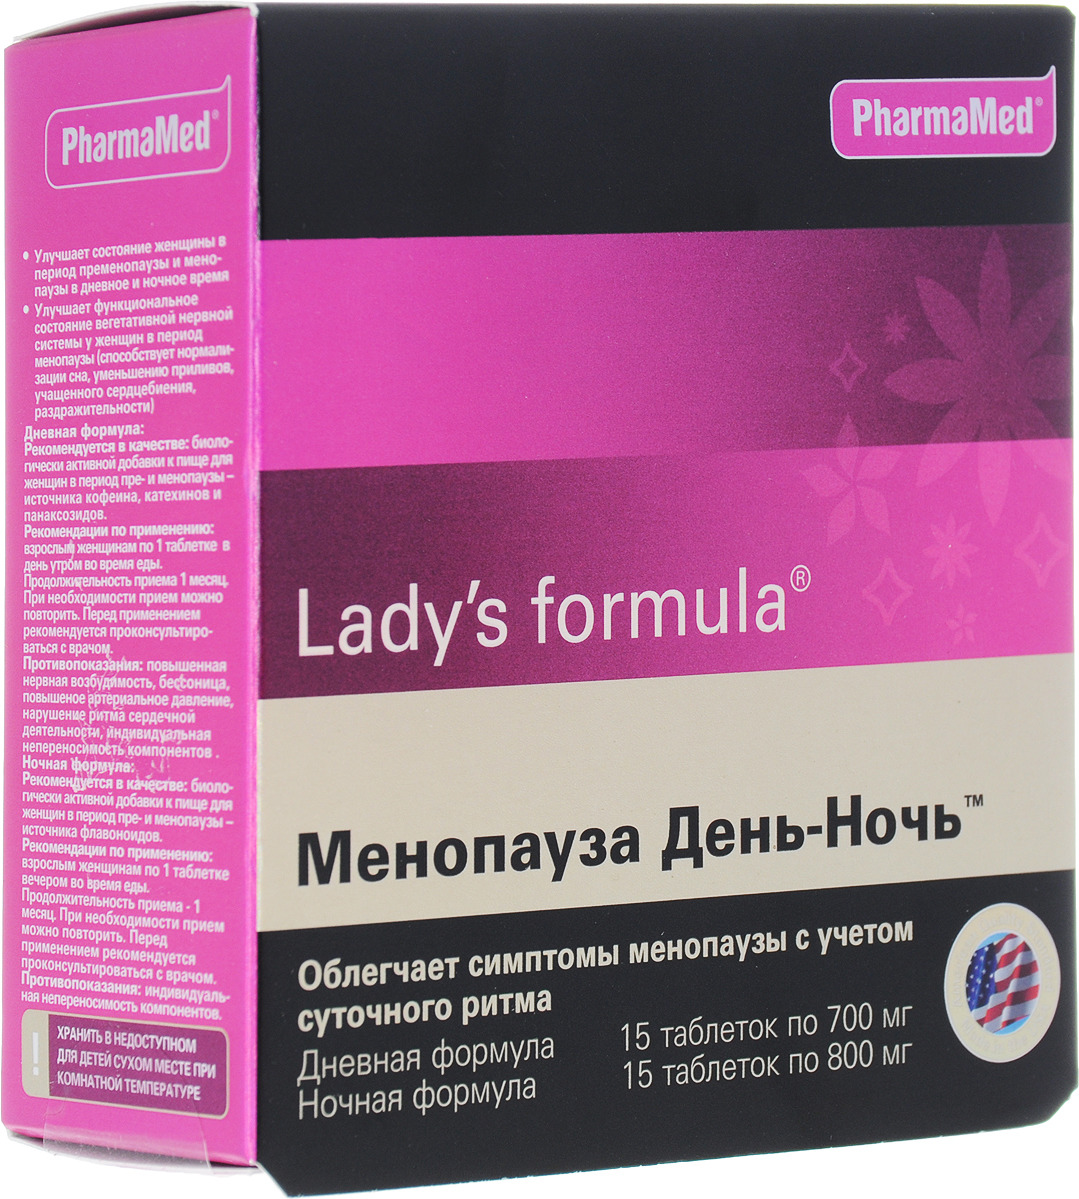 Менопауза усиленная формула купить в спб ледис. Витамины ледис формула менопауза усиленная. Американские витамины для женщин ледис формула. Менопауза ледис формула таблетки. Витамины ледис формула при менопаузе.